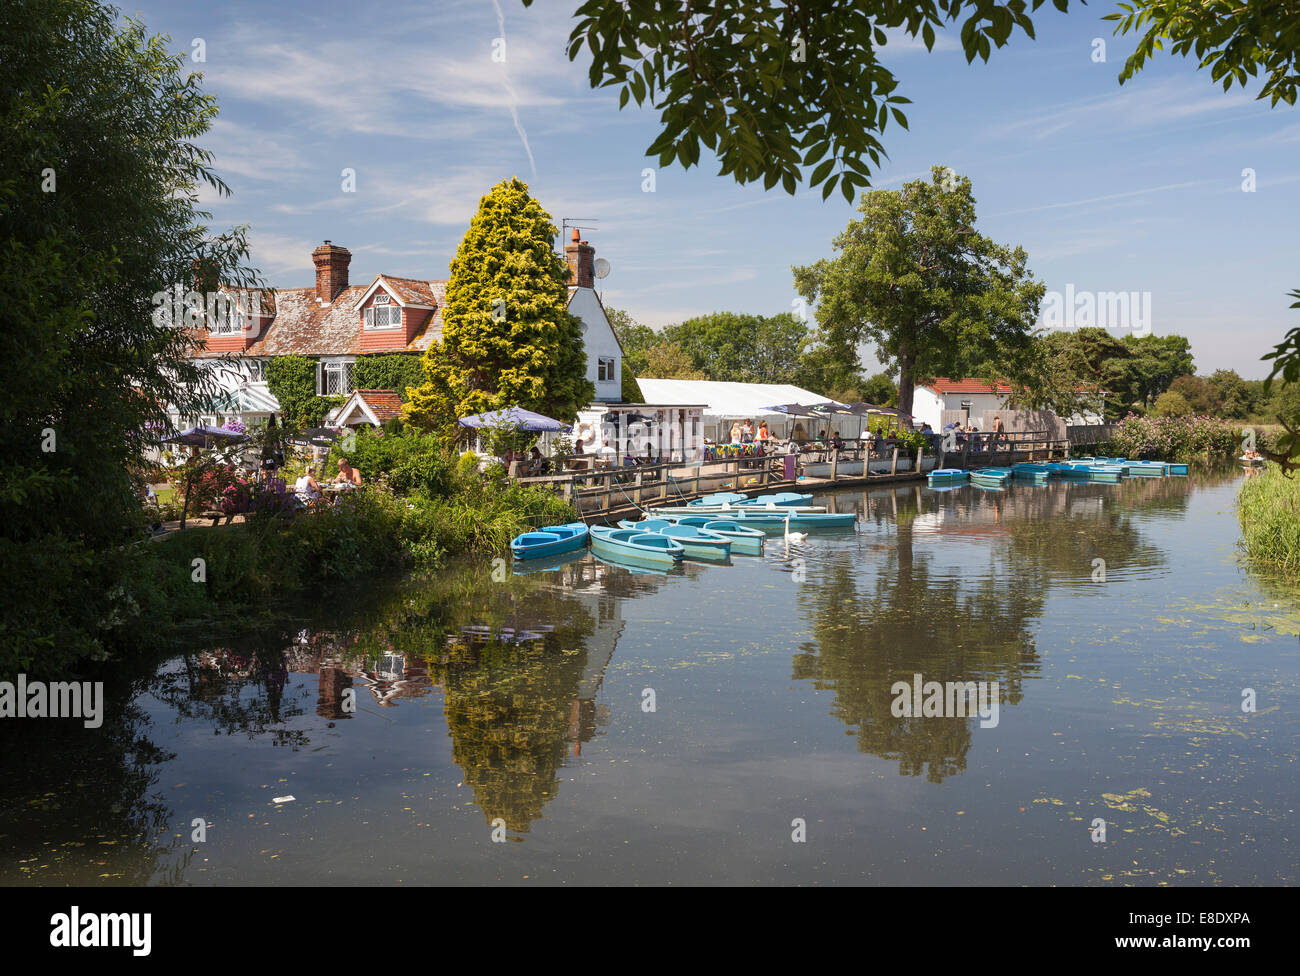 Boote mieten neben dem Anchor Inn, Barcombe in der Nähe von Lewes, East Sussex, England, UK Stockfoto